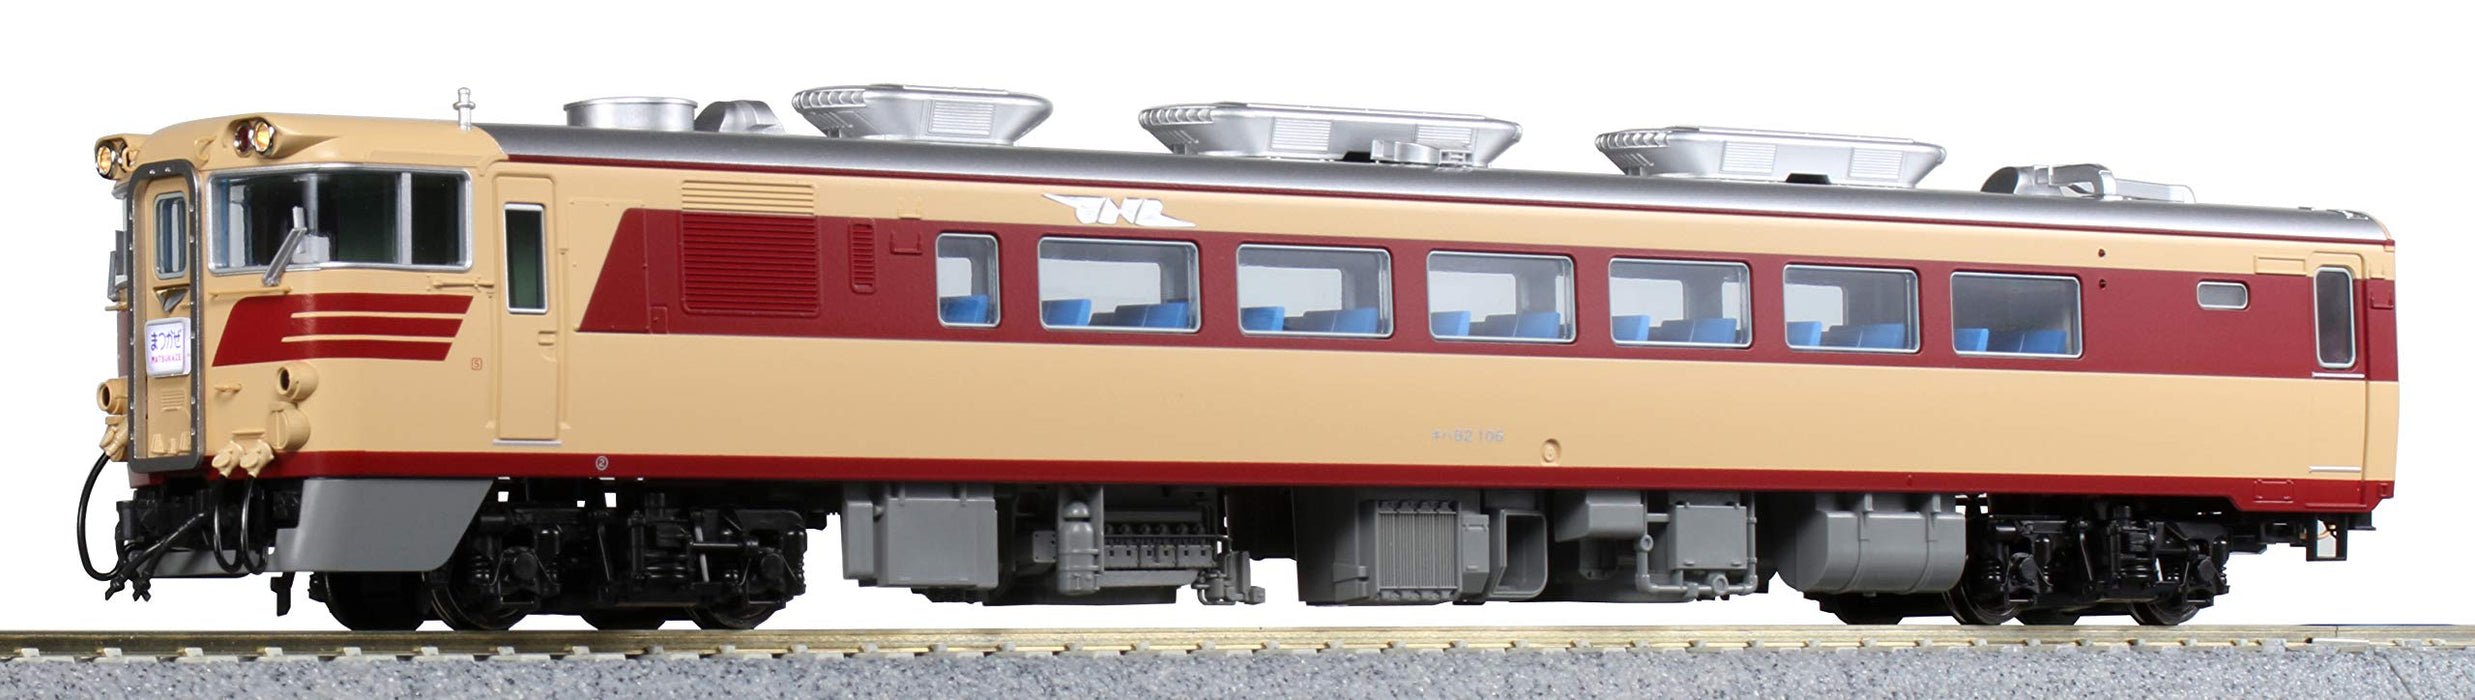 Kato HO Gauge Diesel Railway Model Car - Kiha82 1-607-1